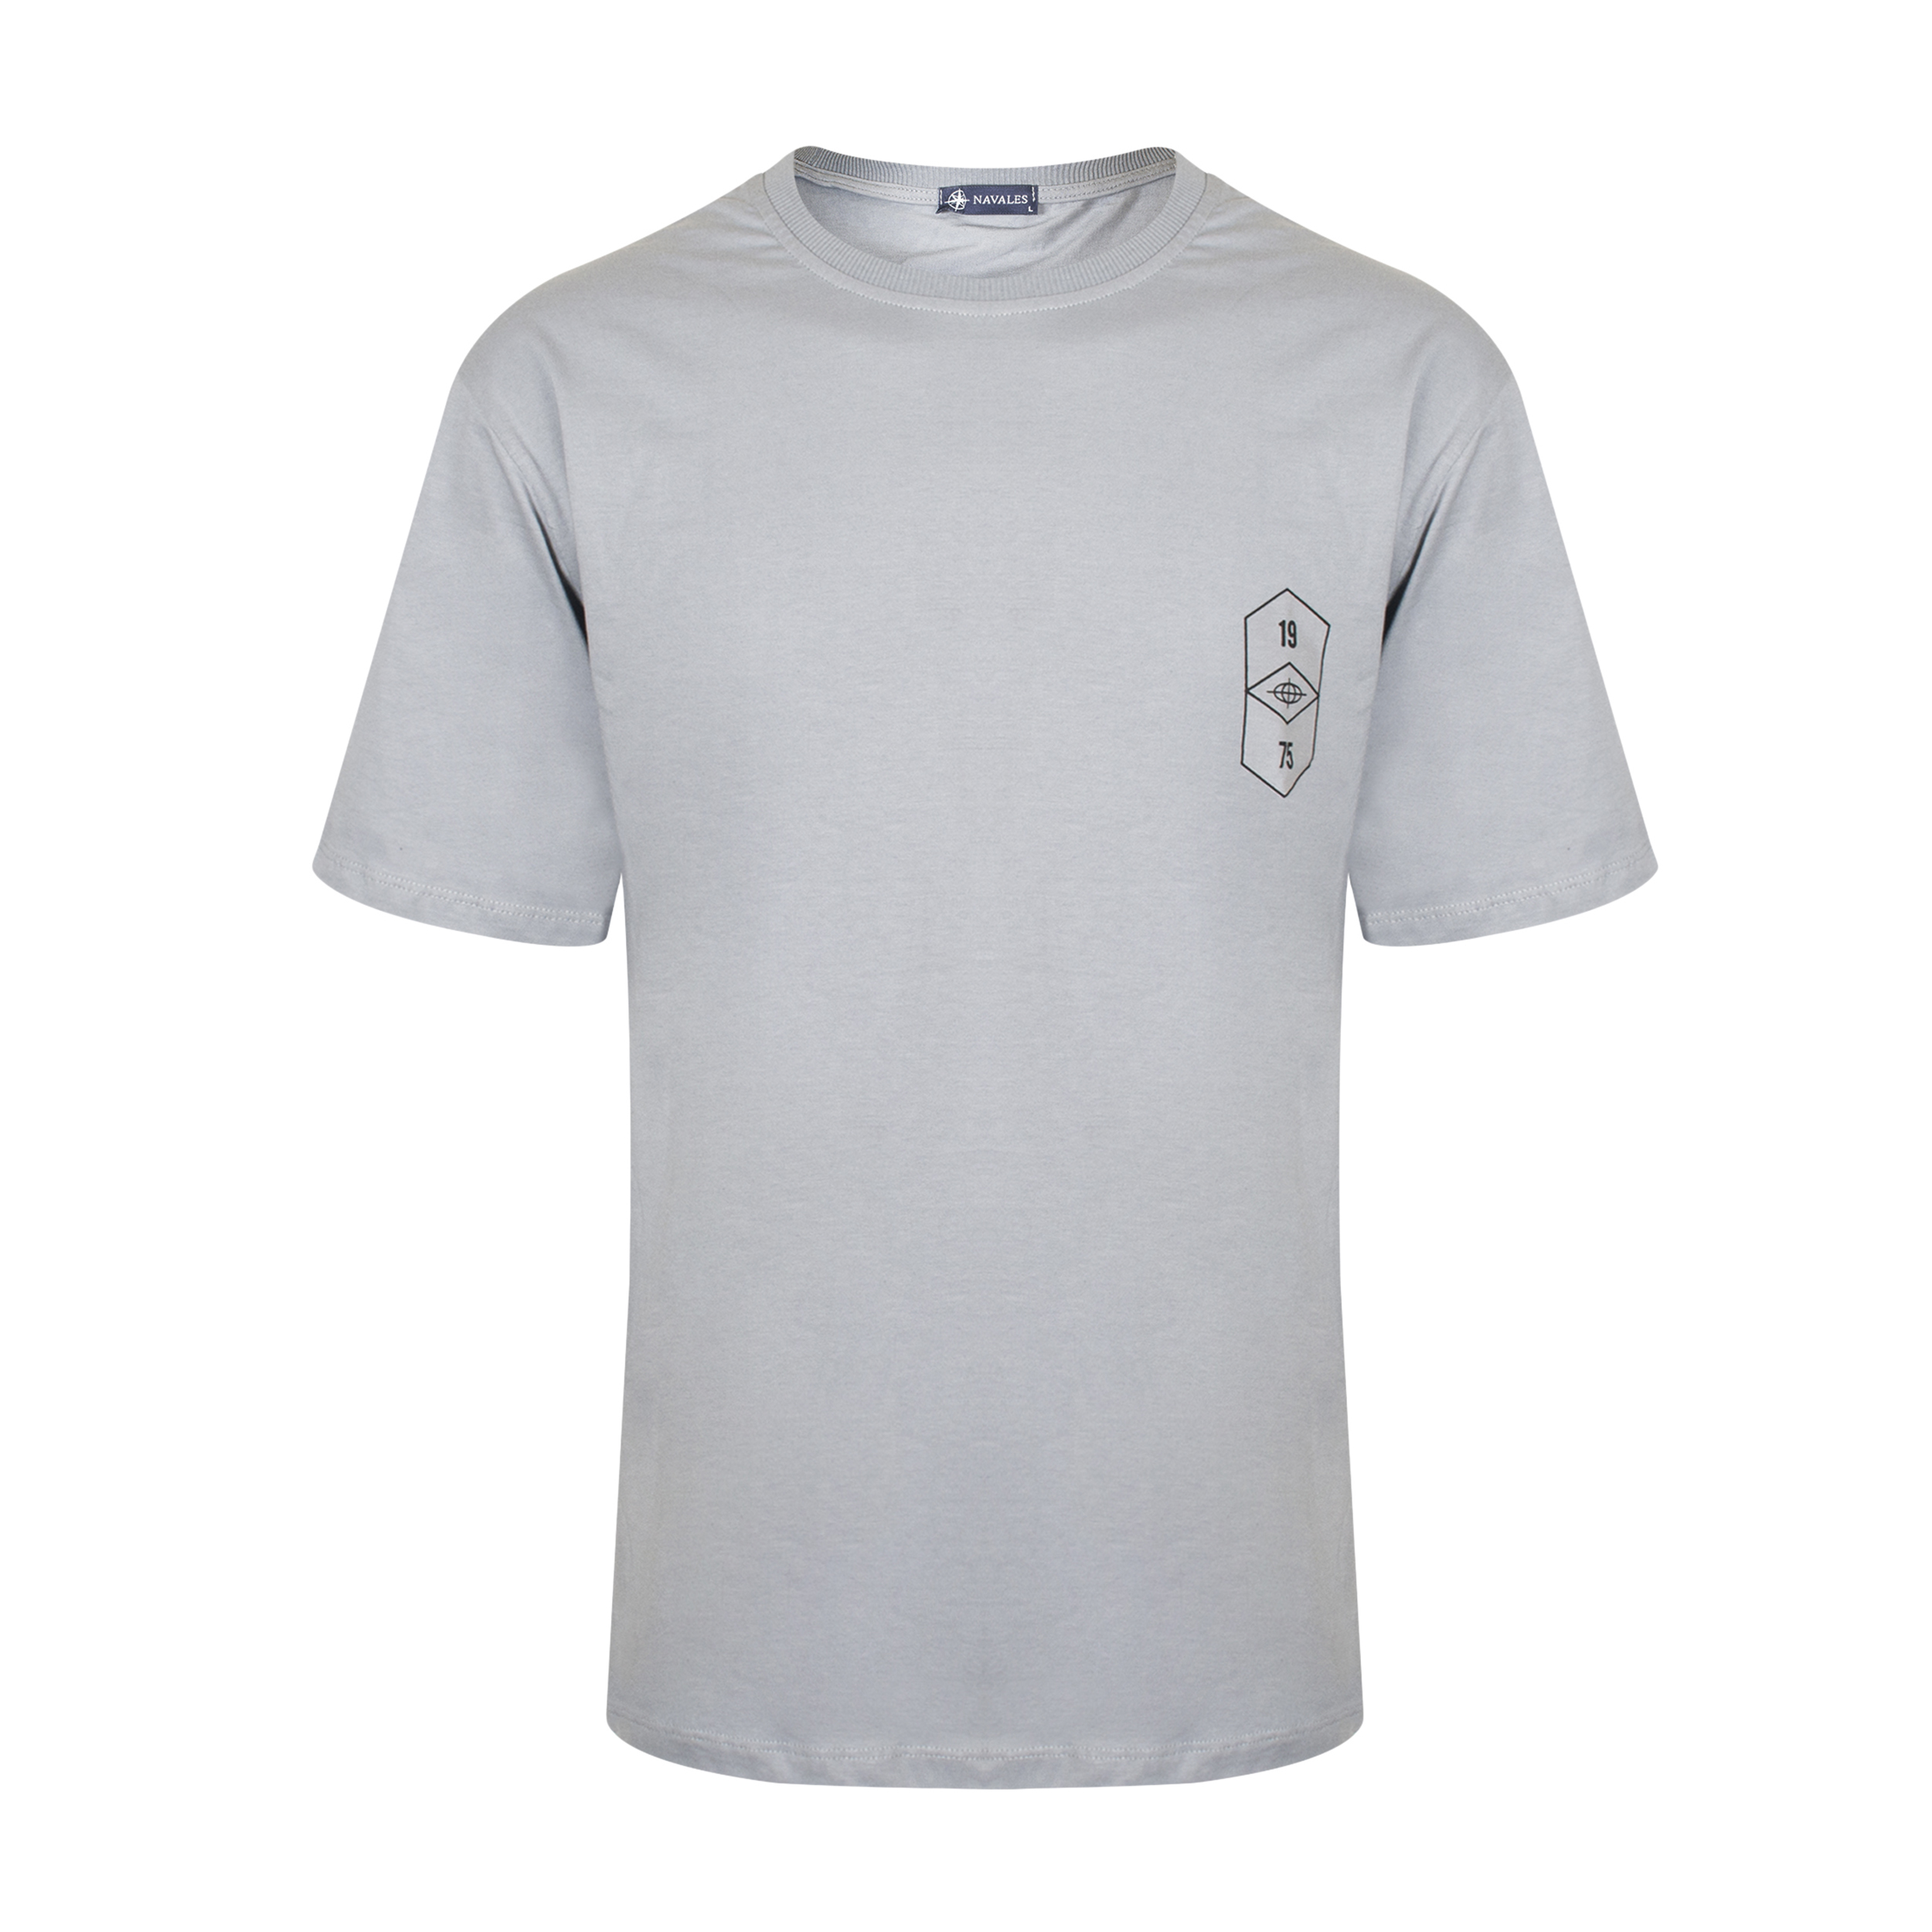 تی شرت آستین کوتاه مردانه ناوالس مدل T رنگ طوسی -  - 1